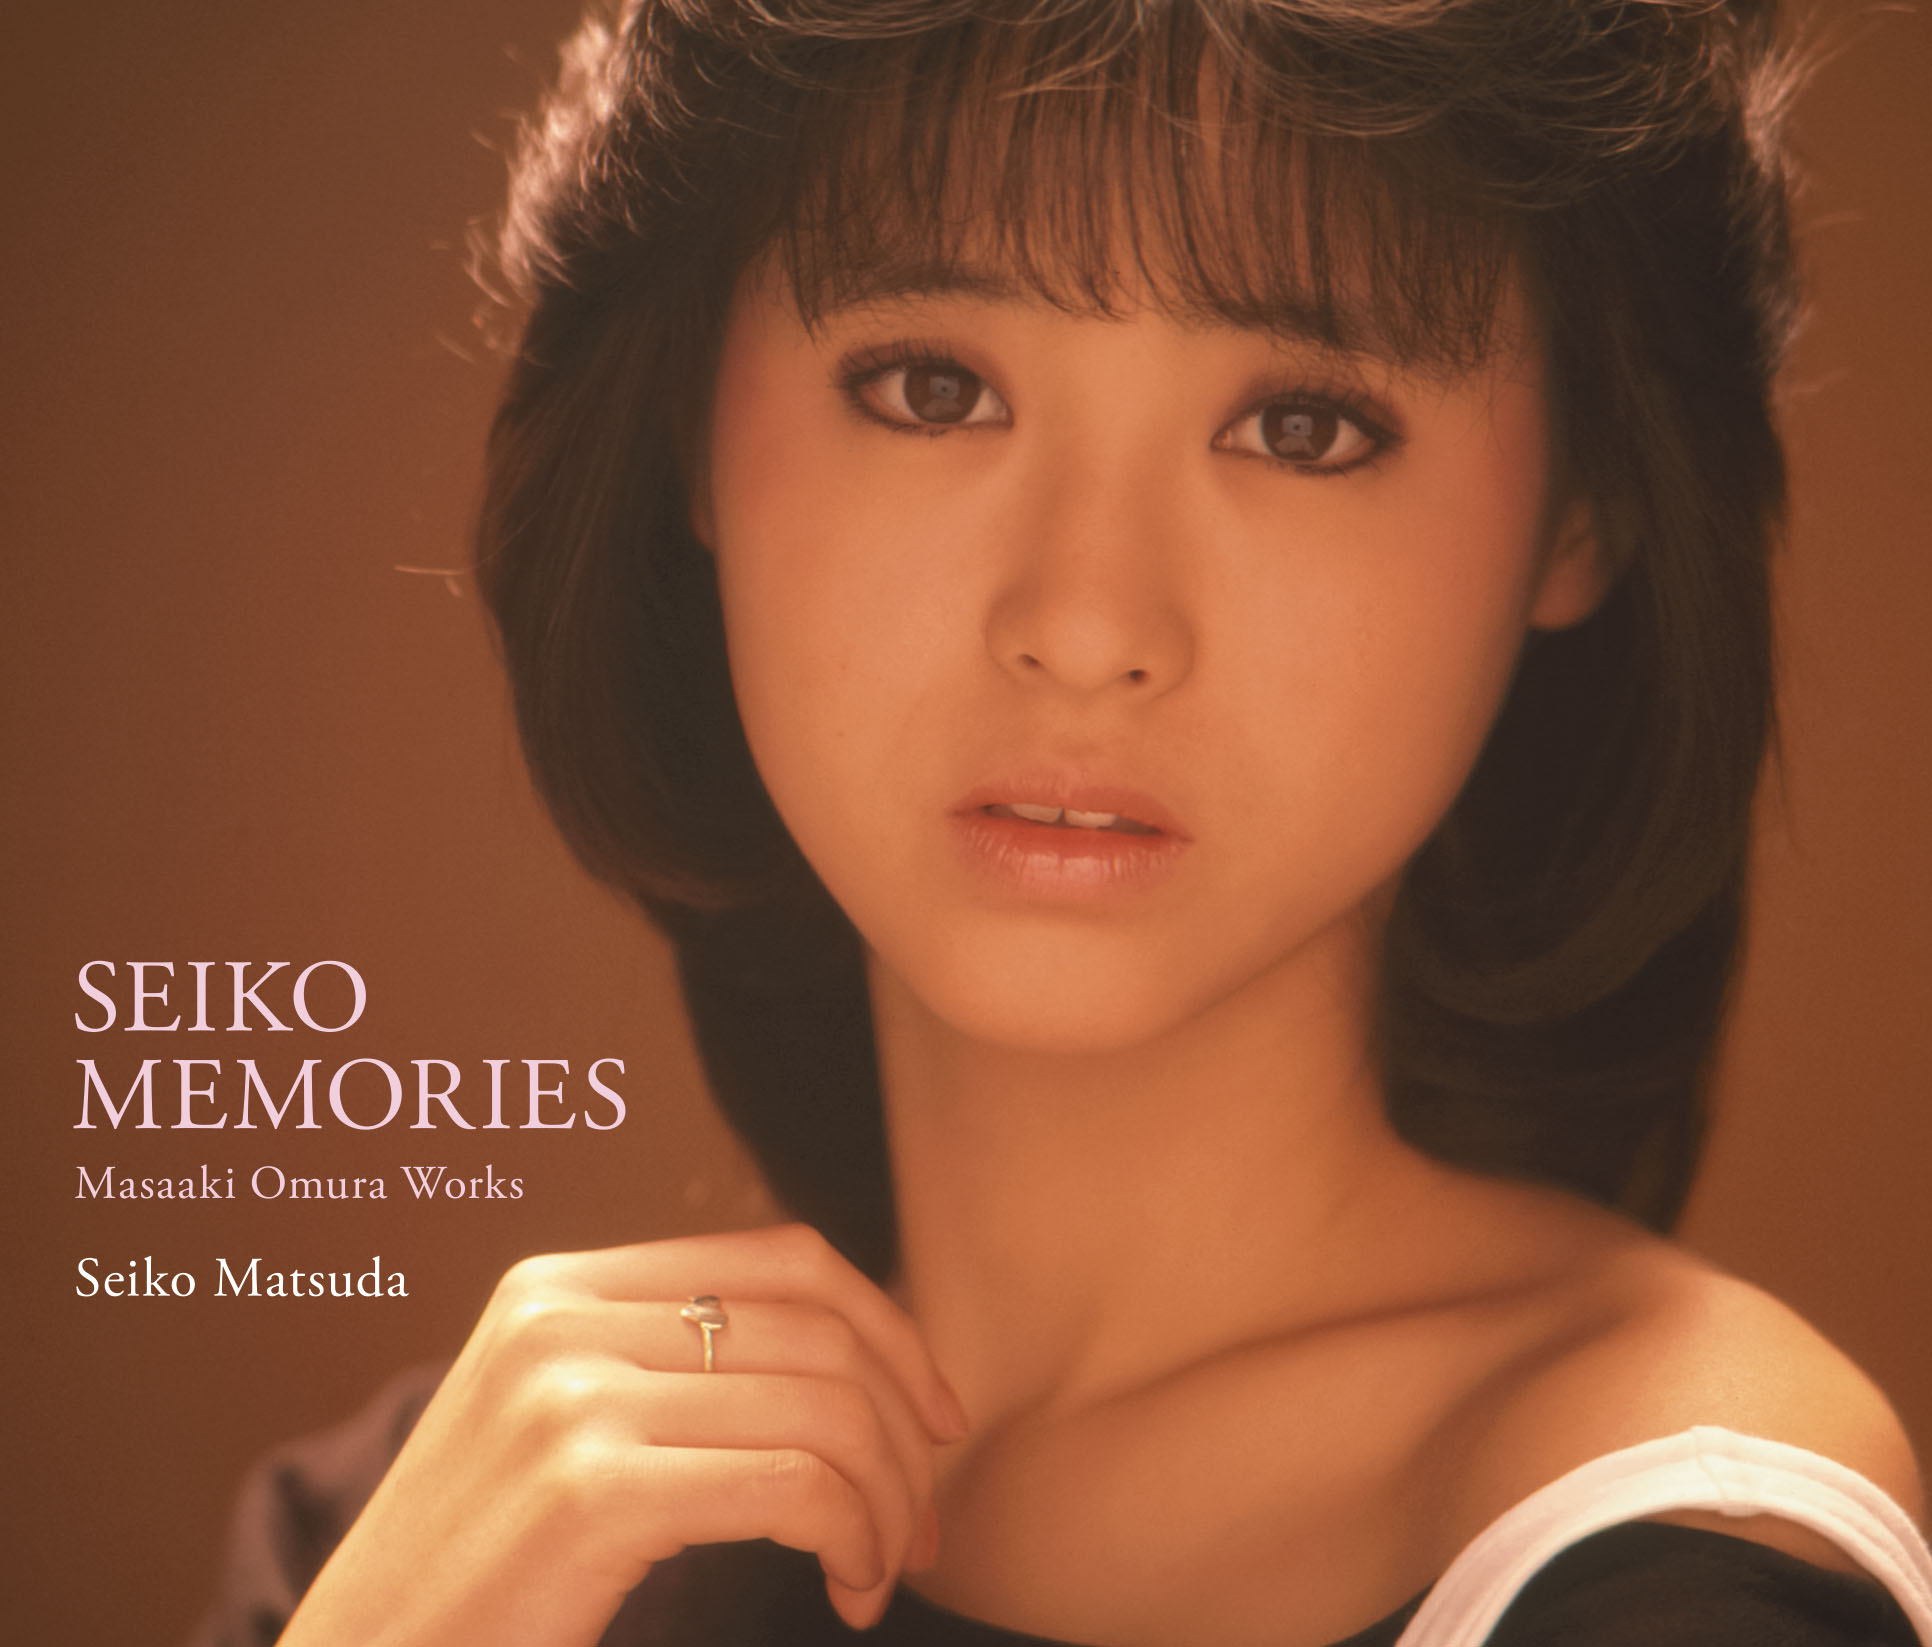 松田聖子 早世の作編曲家 大村雅朗が手掛けた作品集 Seiko Memories Masaaki Omura Works が2月28日発売 株式会社ソニー ミュージックダイレクトのプレスリリース